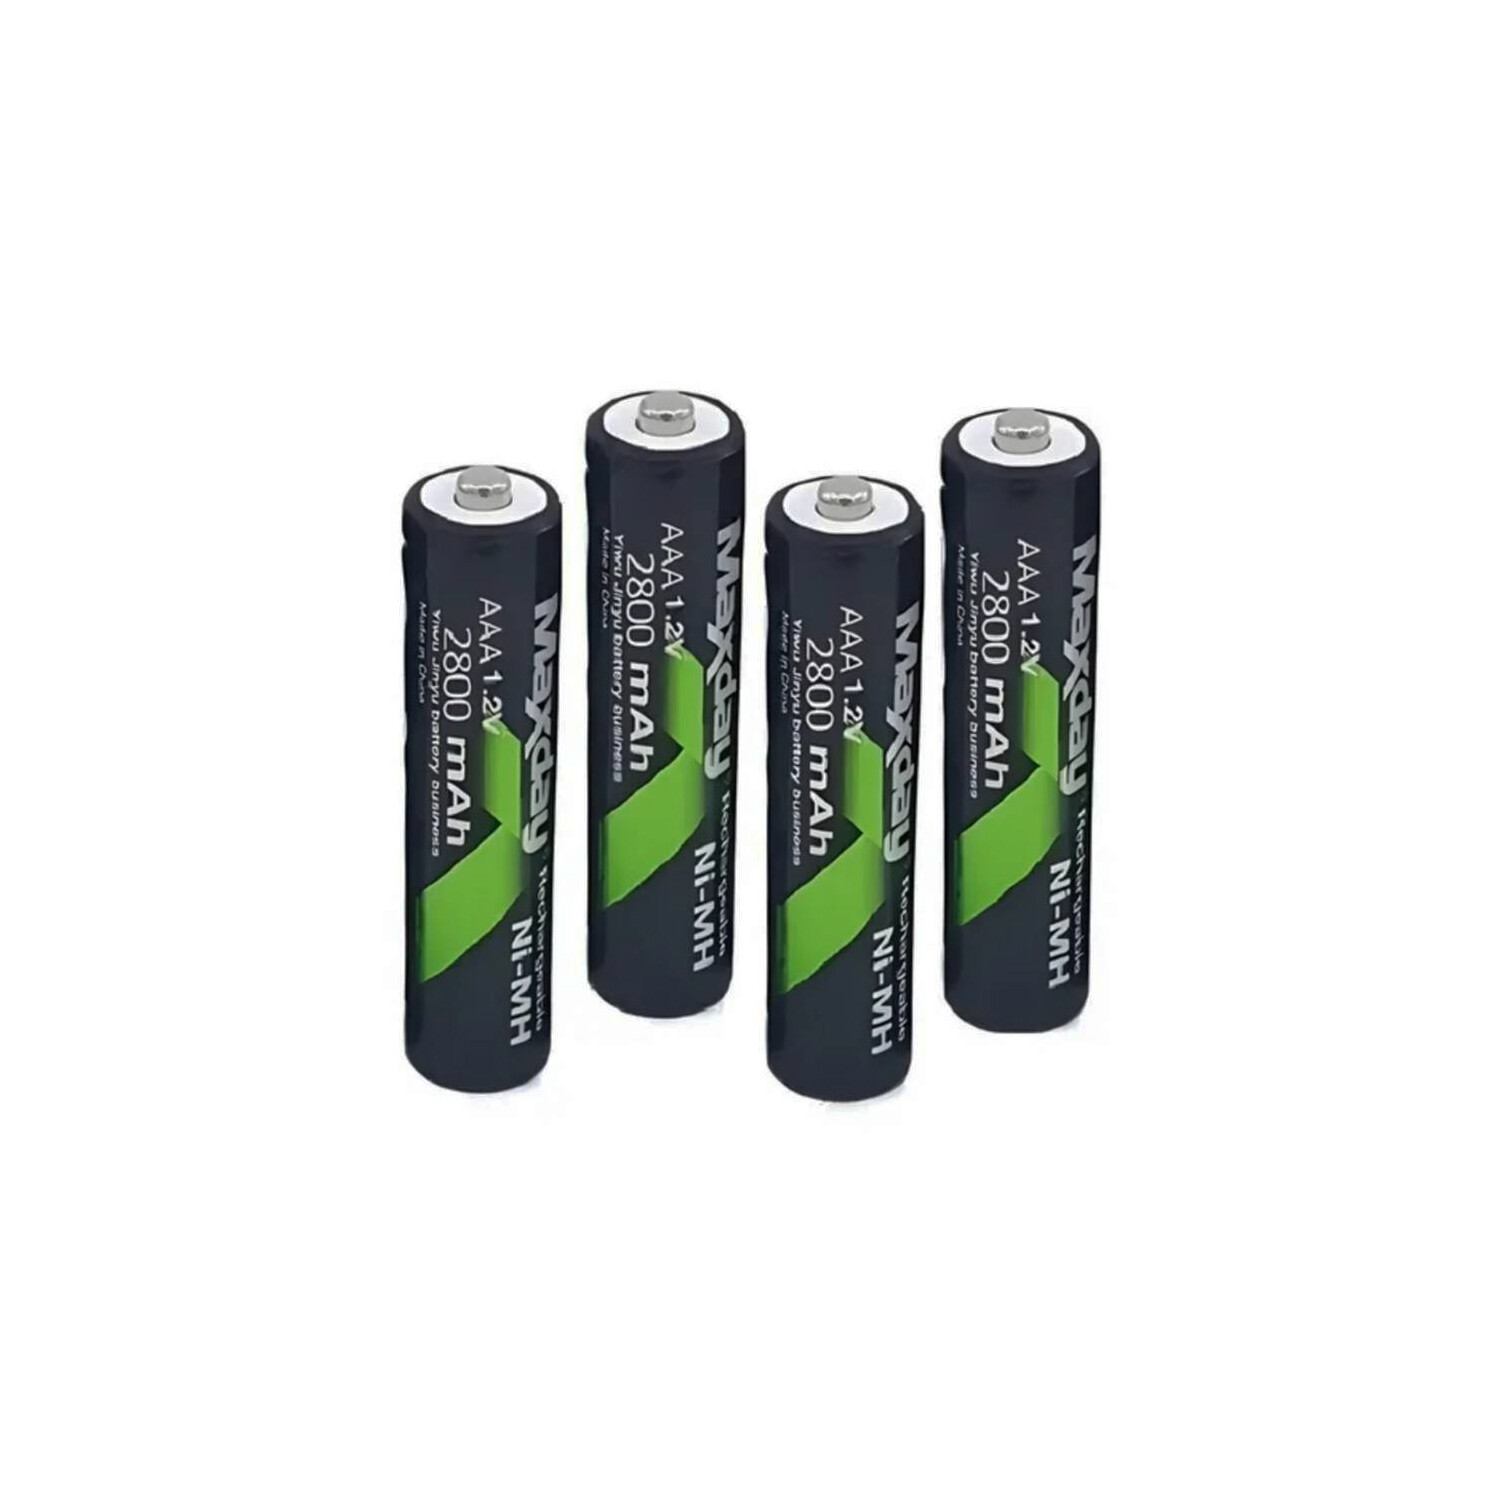 Bateria AAA Recargable 1.2 V - 1100mA x4 Pilas + Cargador